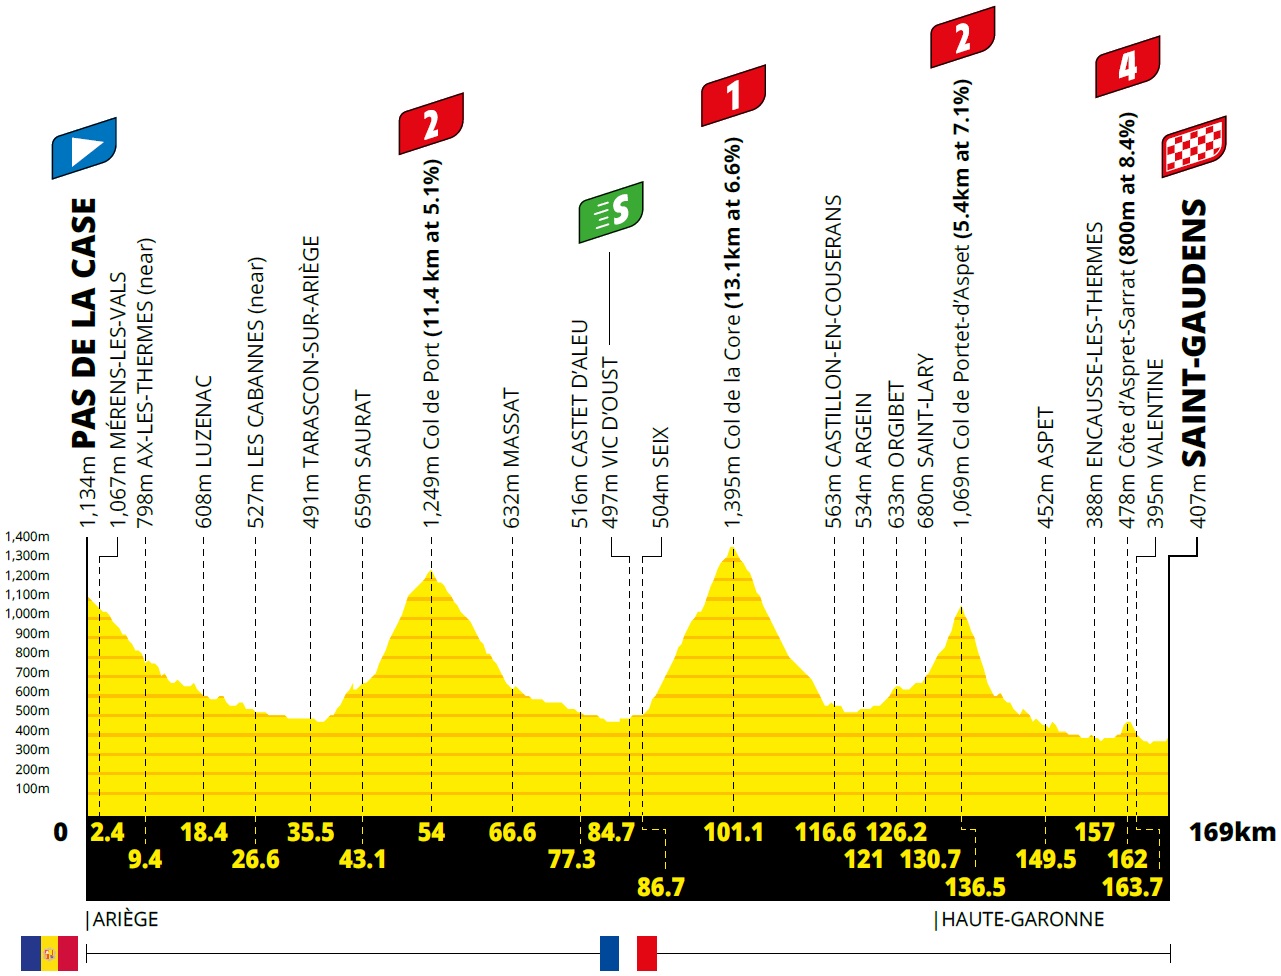 Höhenprofil Tour de France 2021 - Etappe 16